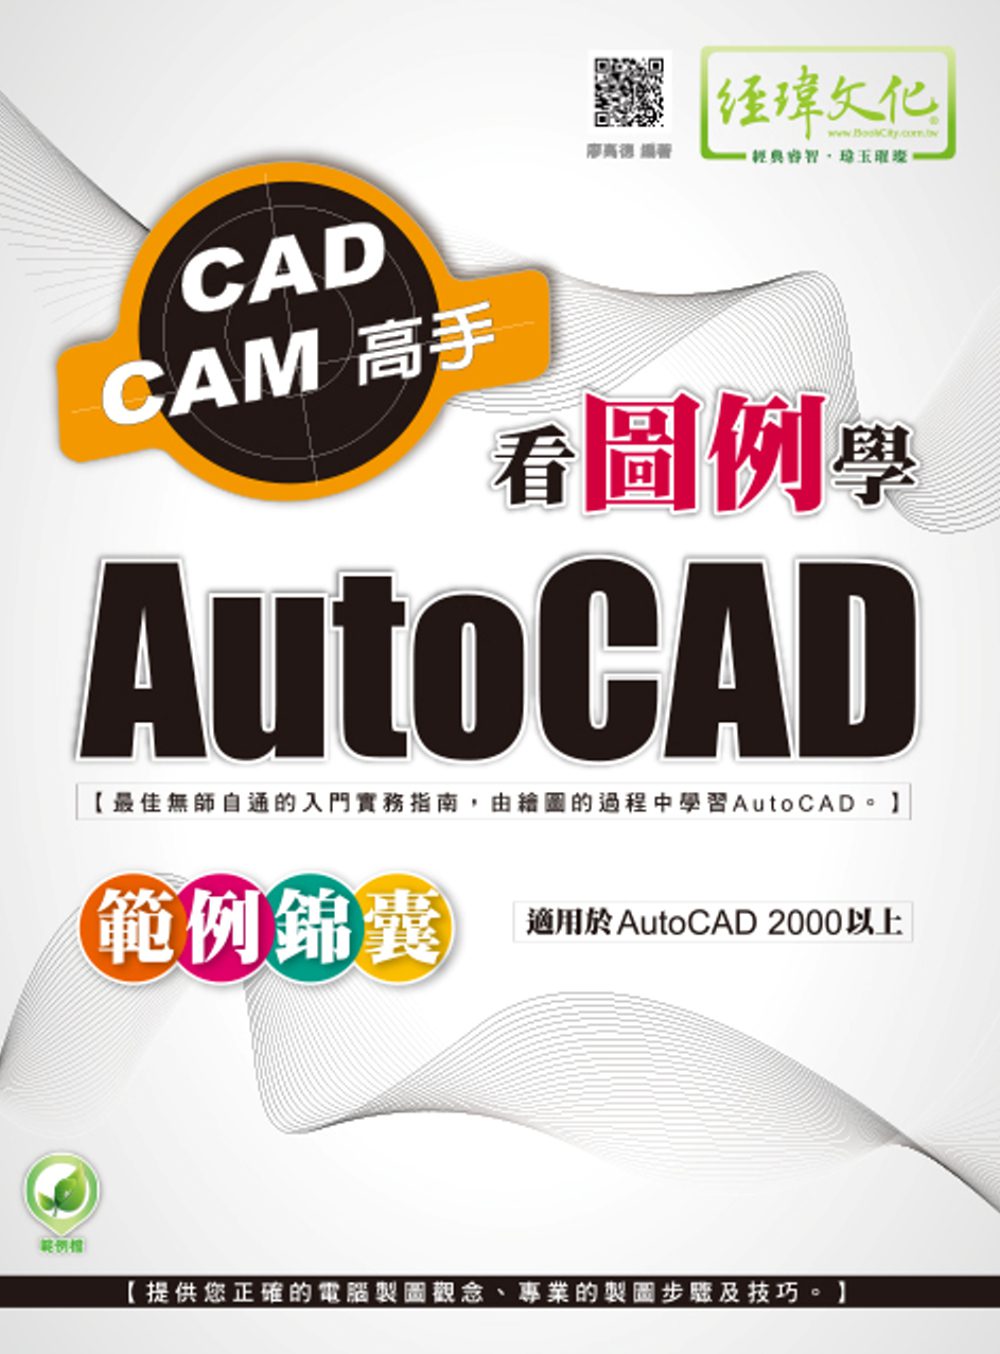 看圖例學AutoCAD範例錦囊(附綠色範例檔)